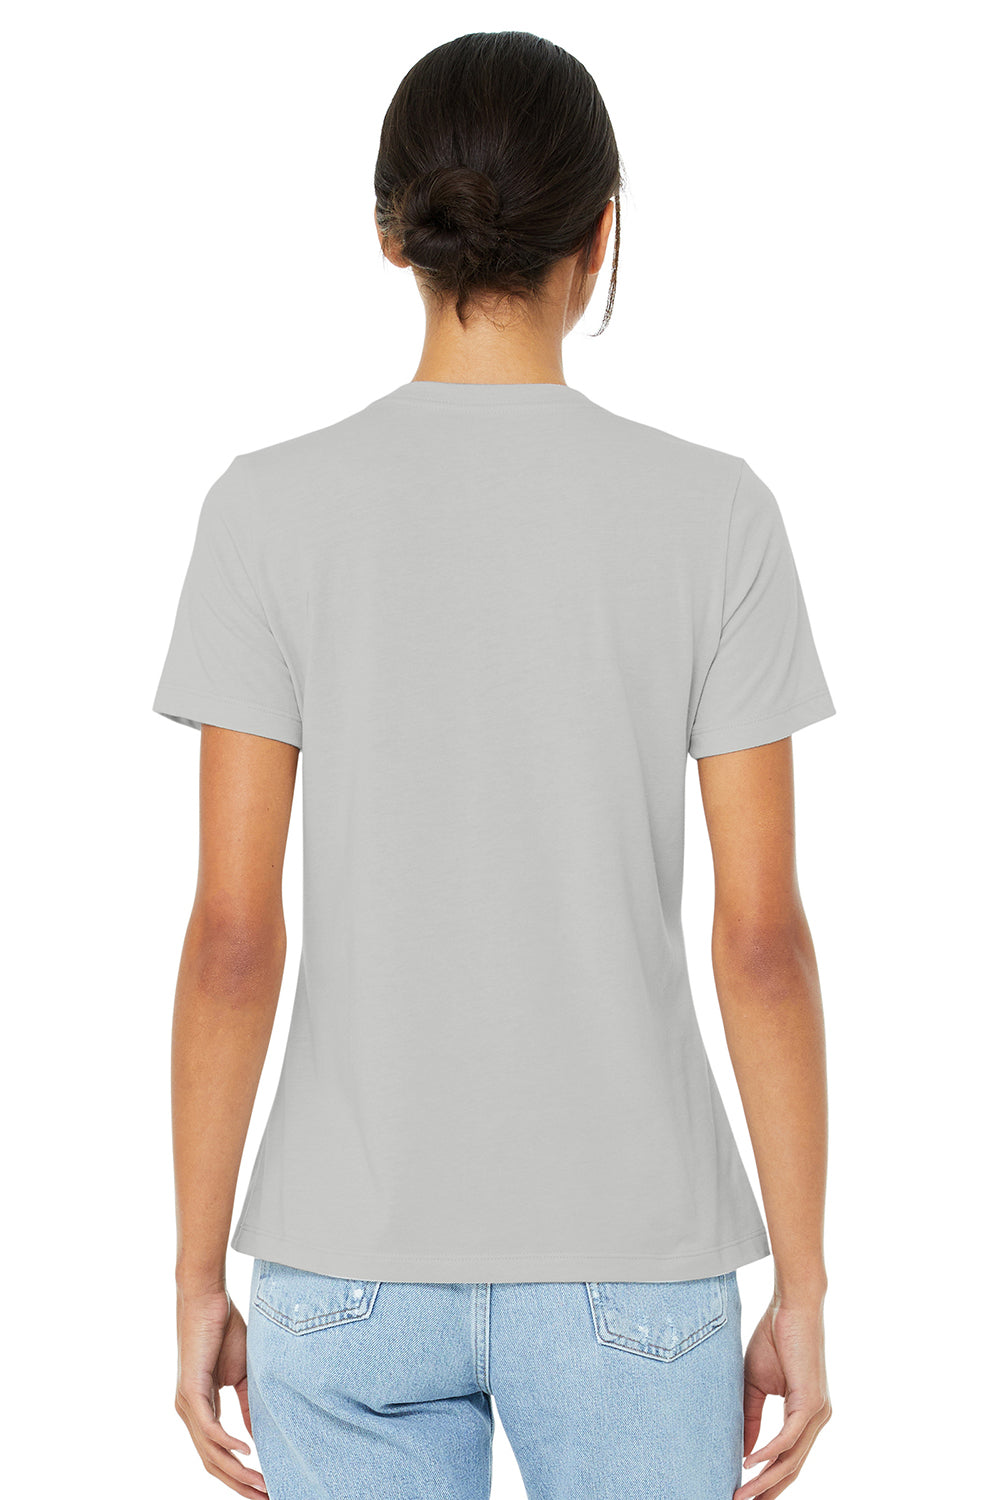 Bella + Canvas BC6400CVC/6400CVC Womens CVC Short Sleeve Crewneck T-Shirt Heather Silver Grey Model Back